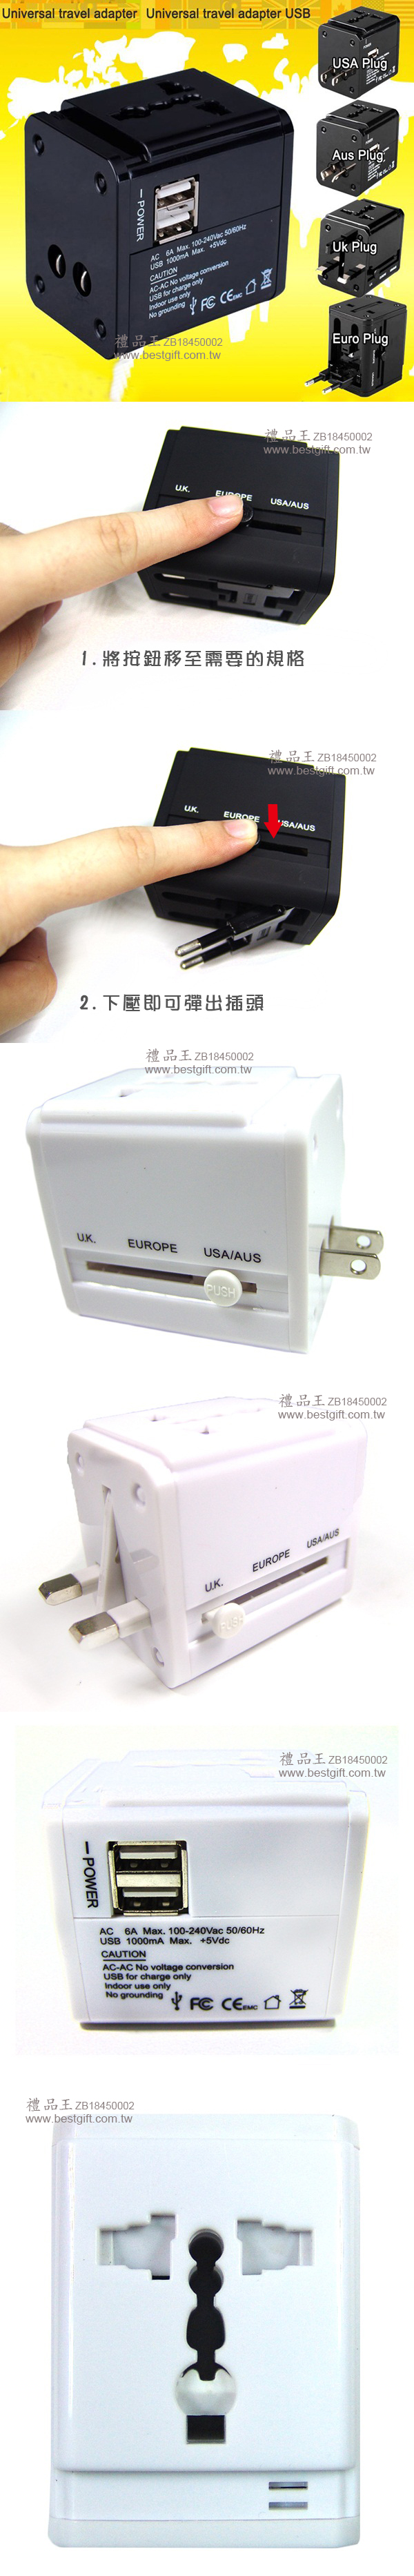 雙USB萬用轉換插頭